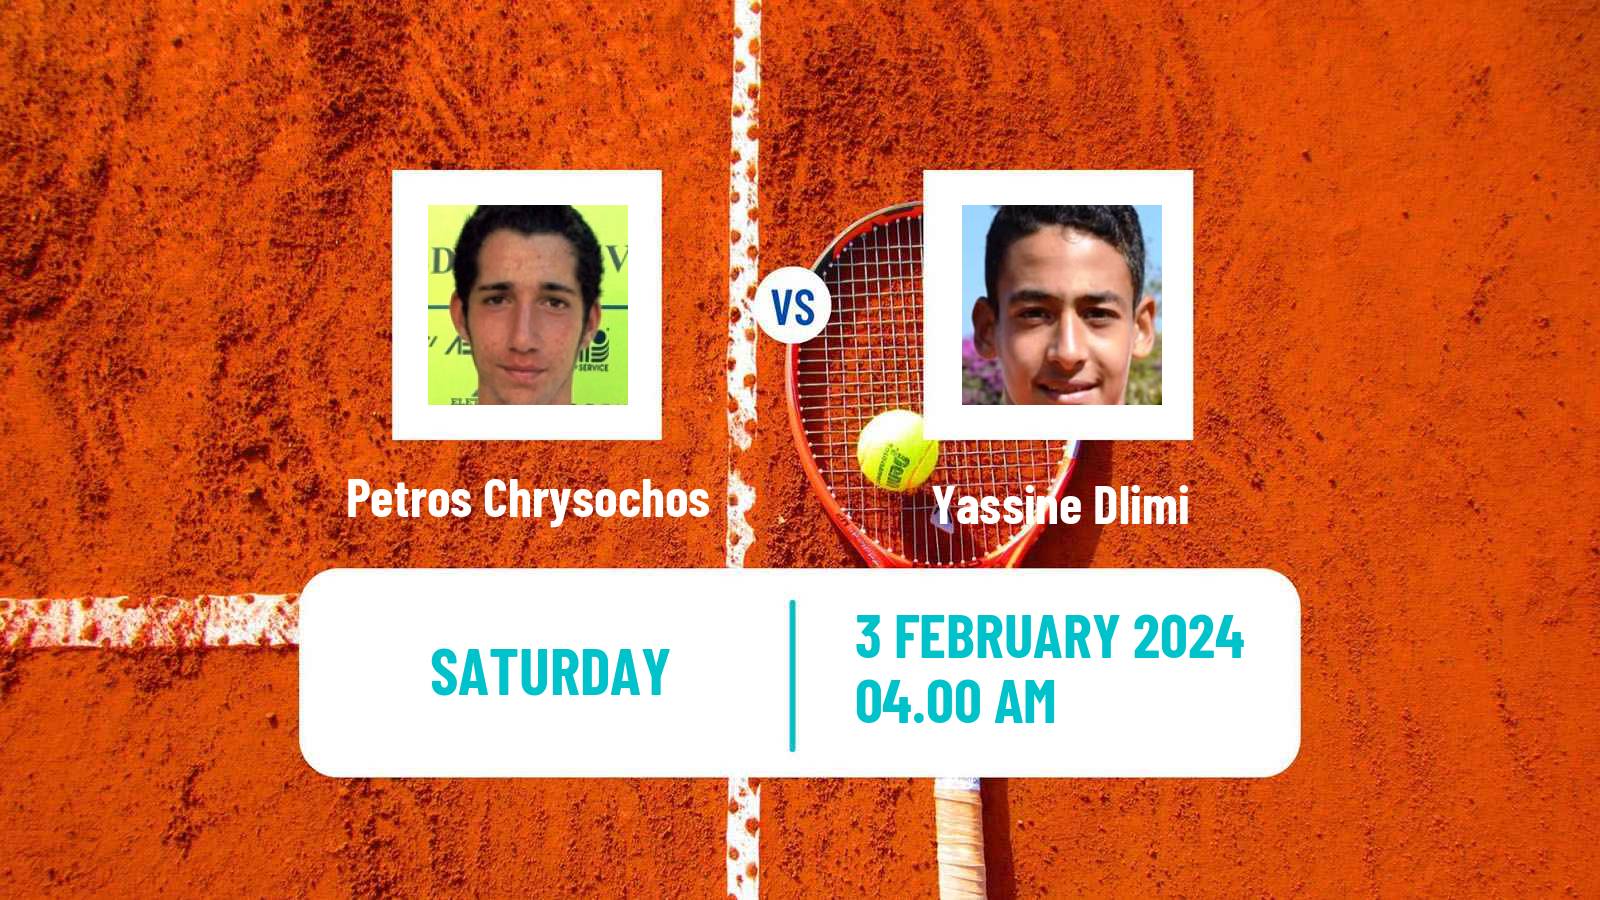 Tennis Davis Cup World Group II Petros Chrysochos - Yassine Dlimi